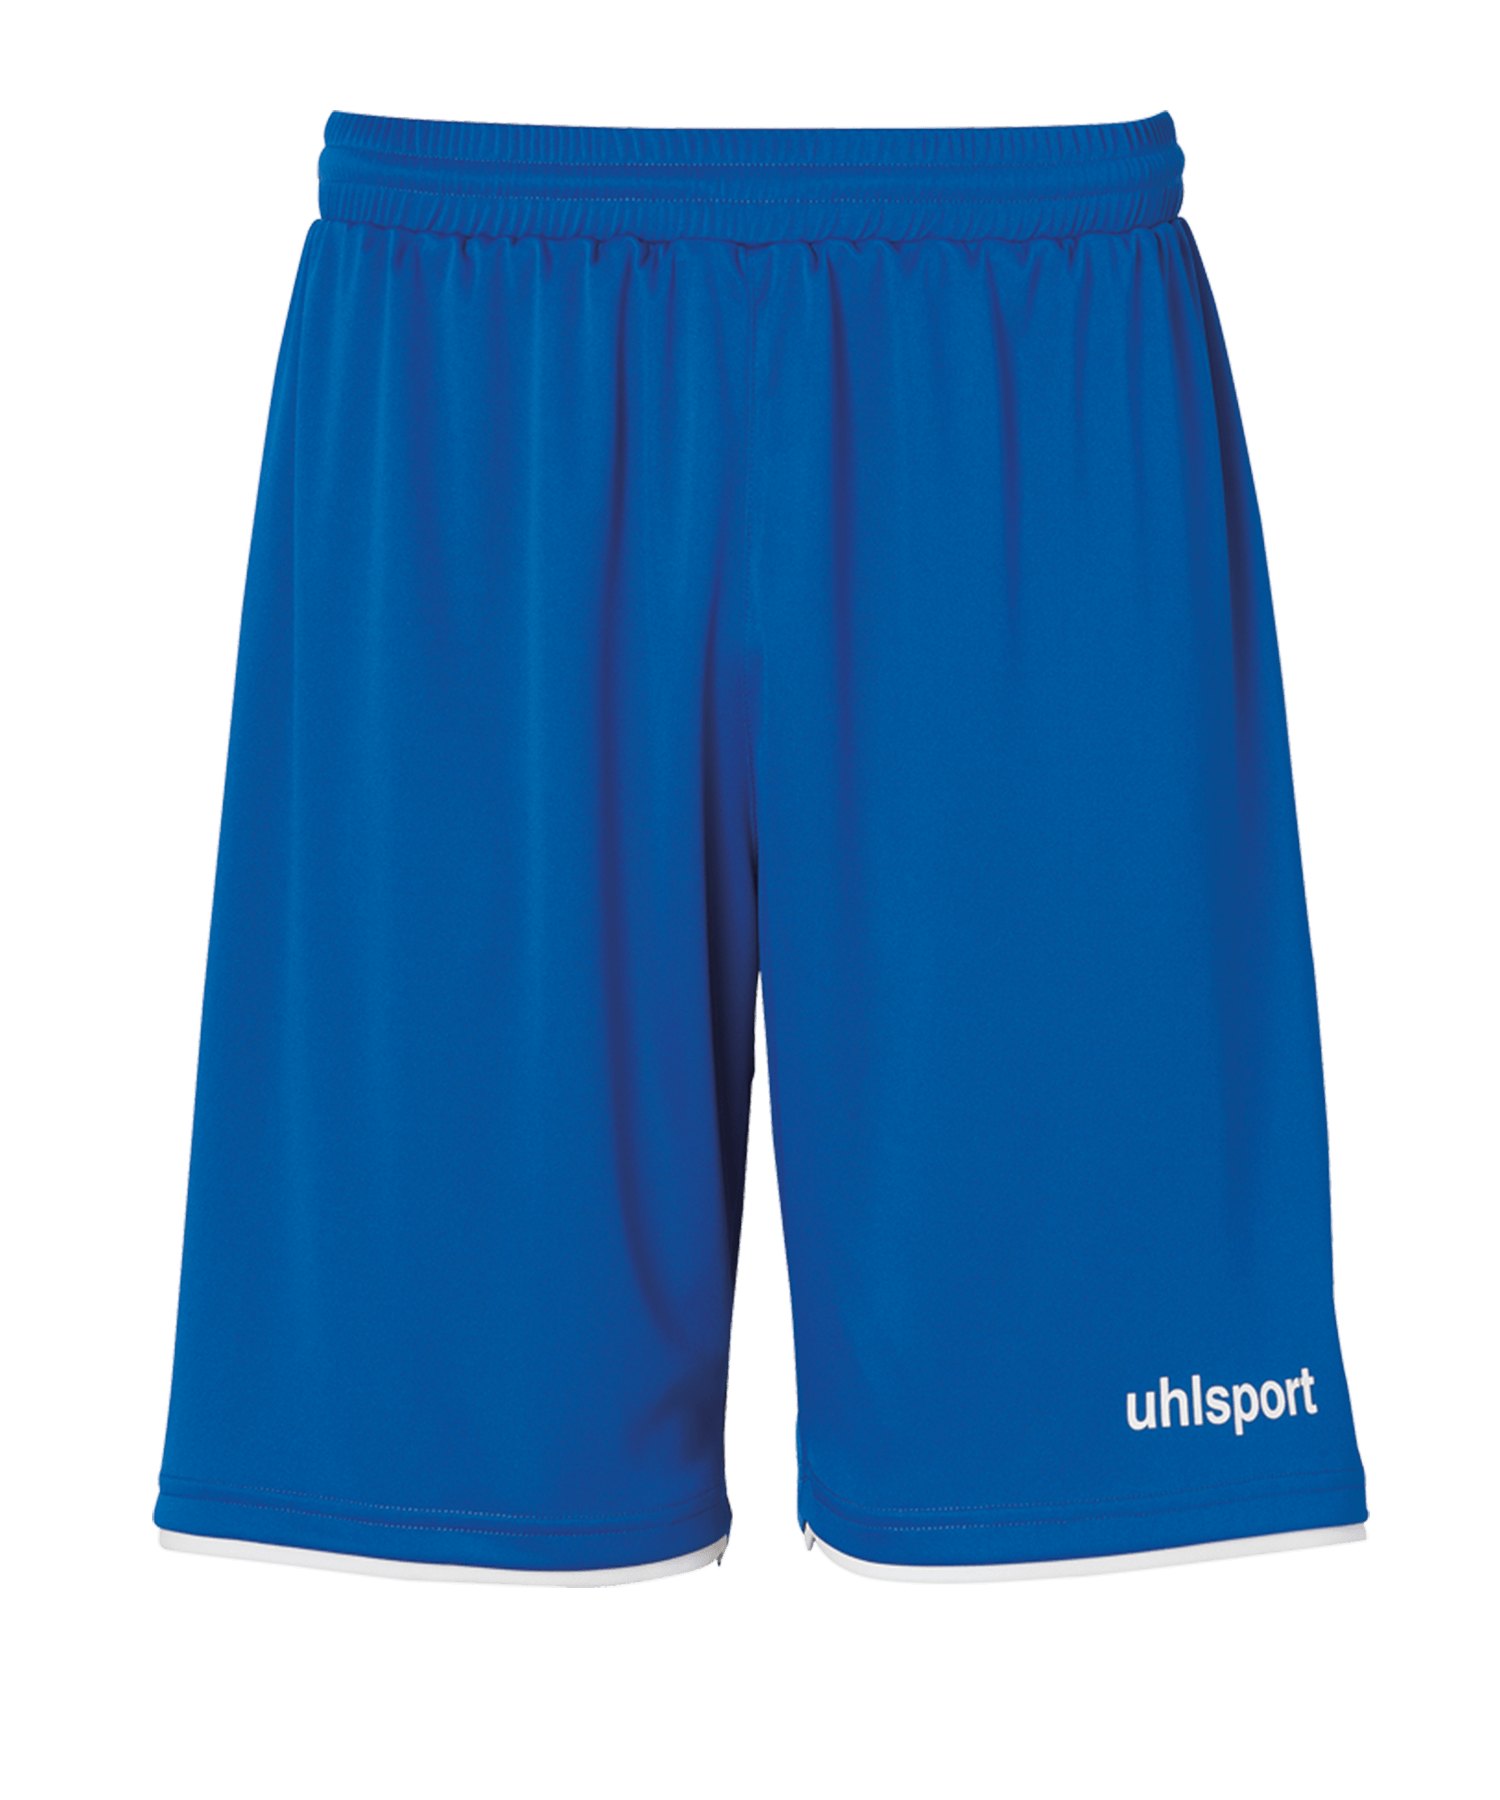 Uhlsport Club Short Kids Blau Weiss F03 - blau